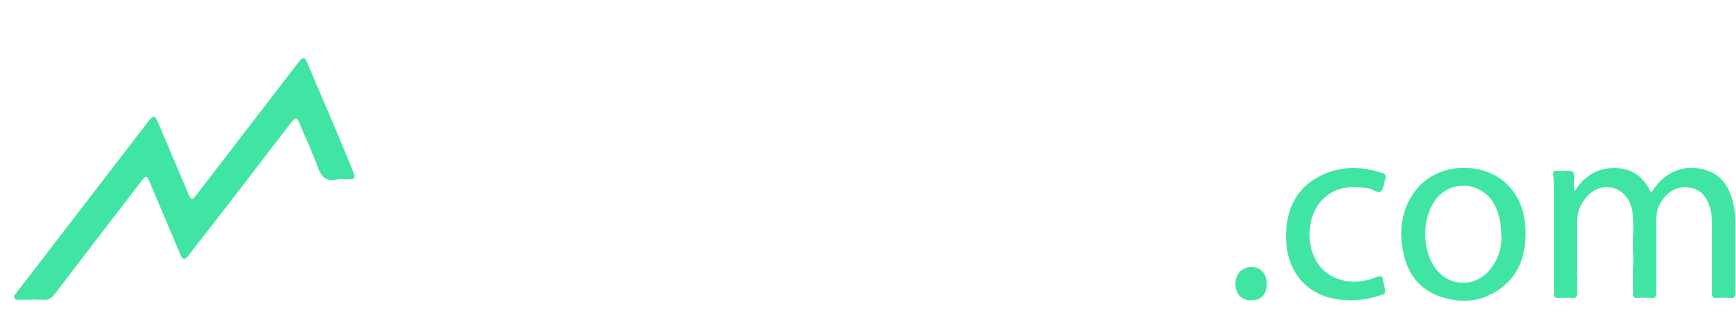 mutui-com-logo